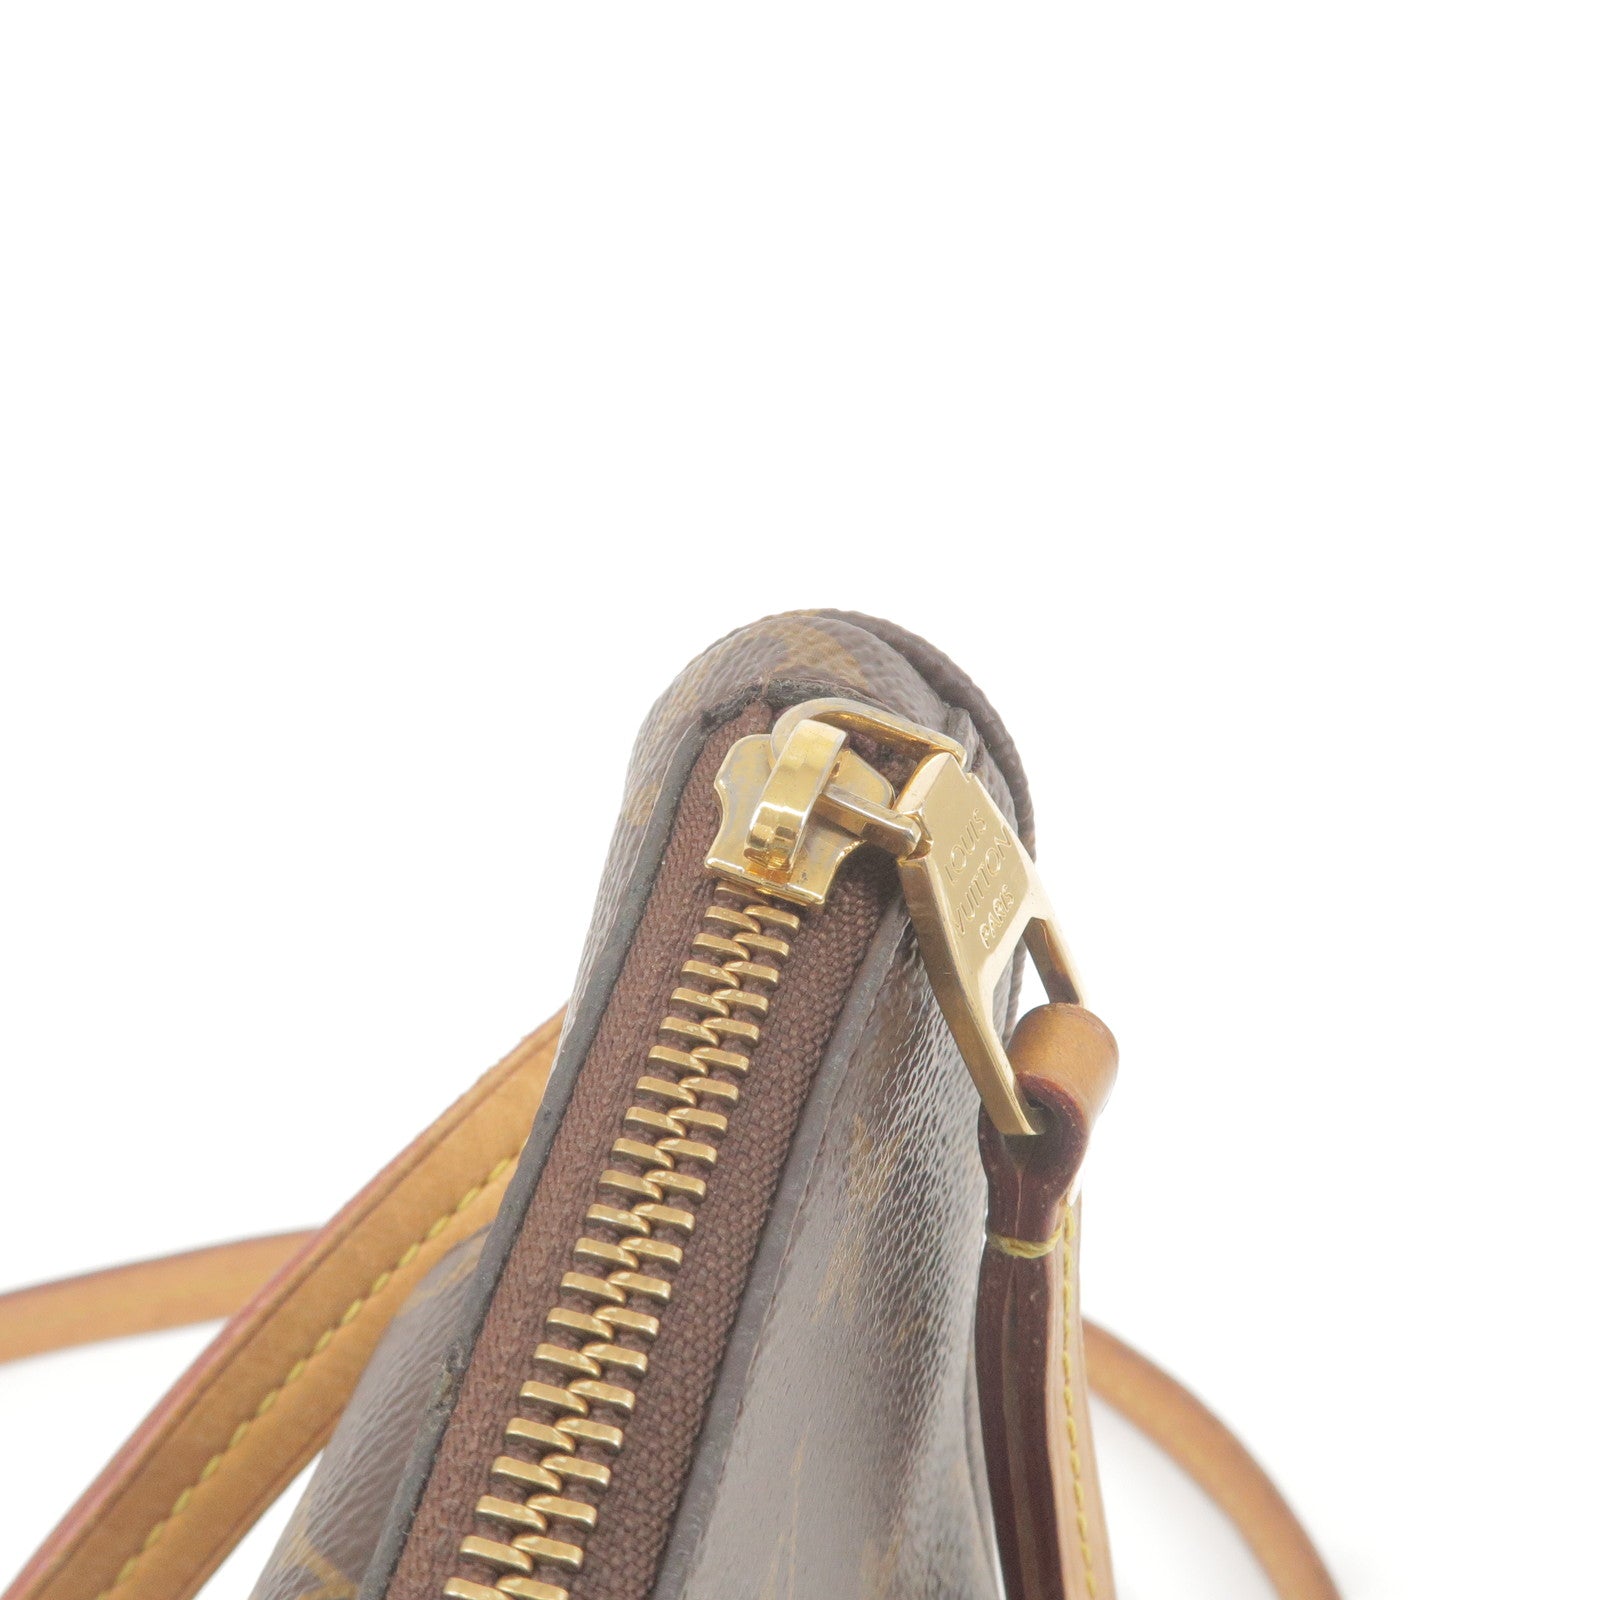 M41679 – dct - Monogram - Mabillon - ep_vintage luxury Store - Shoulder -  Vuitton - Bag - Louis - Louis Vuitton pre-owned Pont Neuf handbag